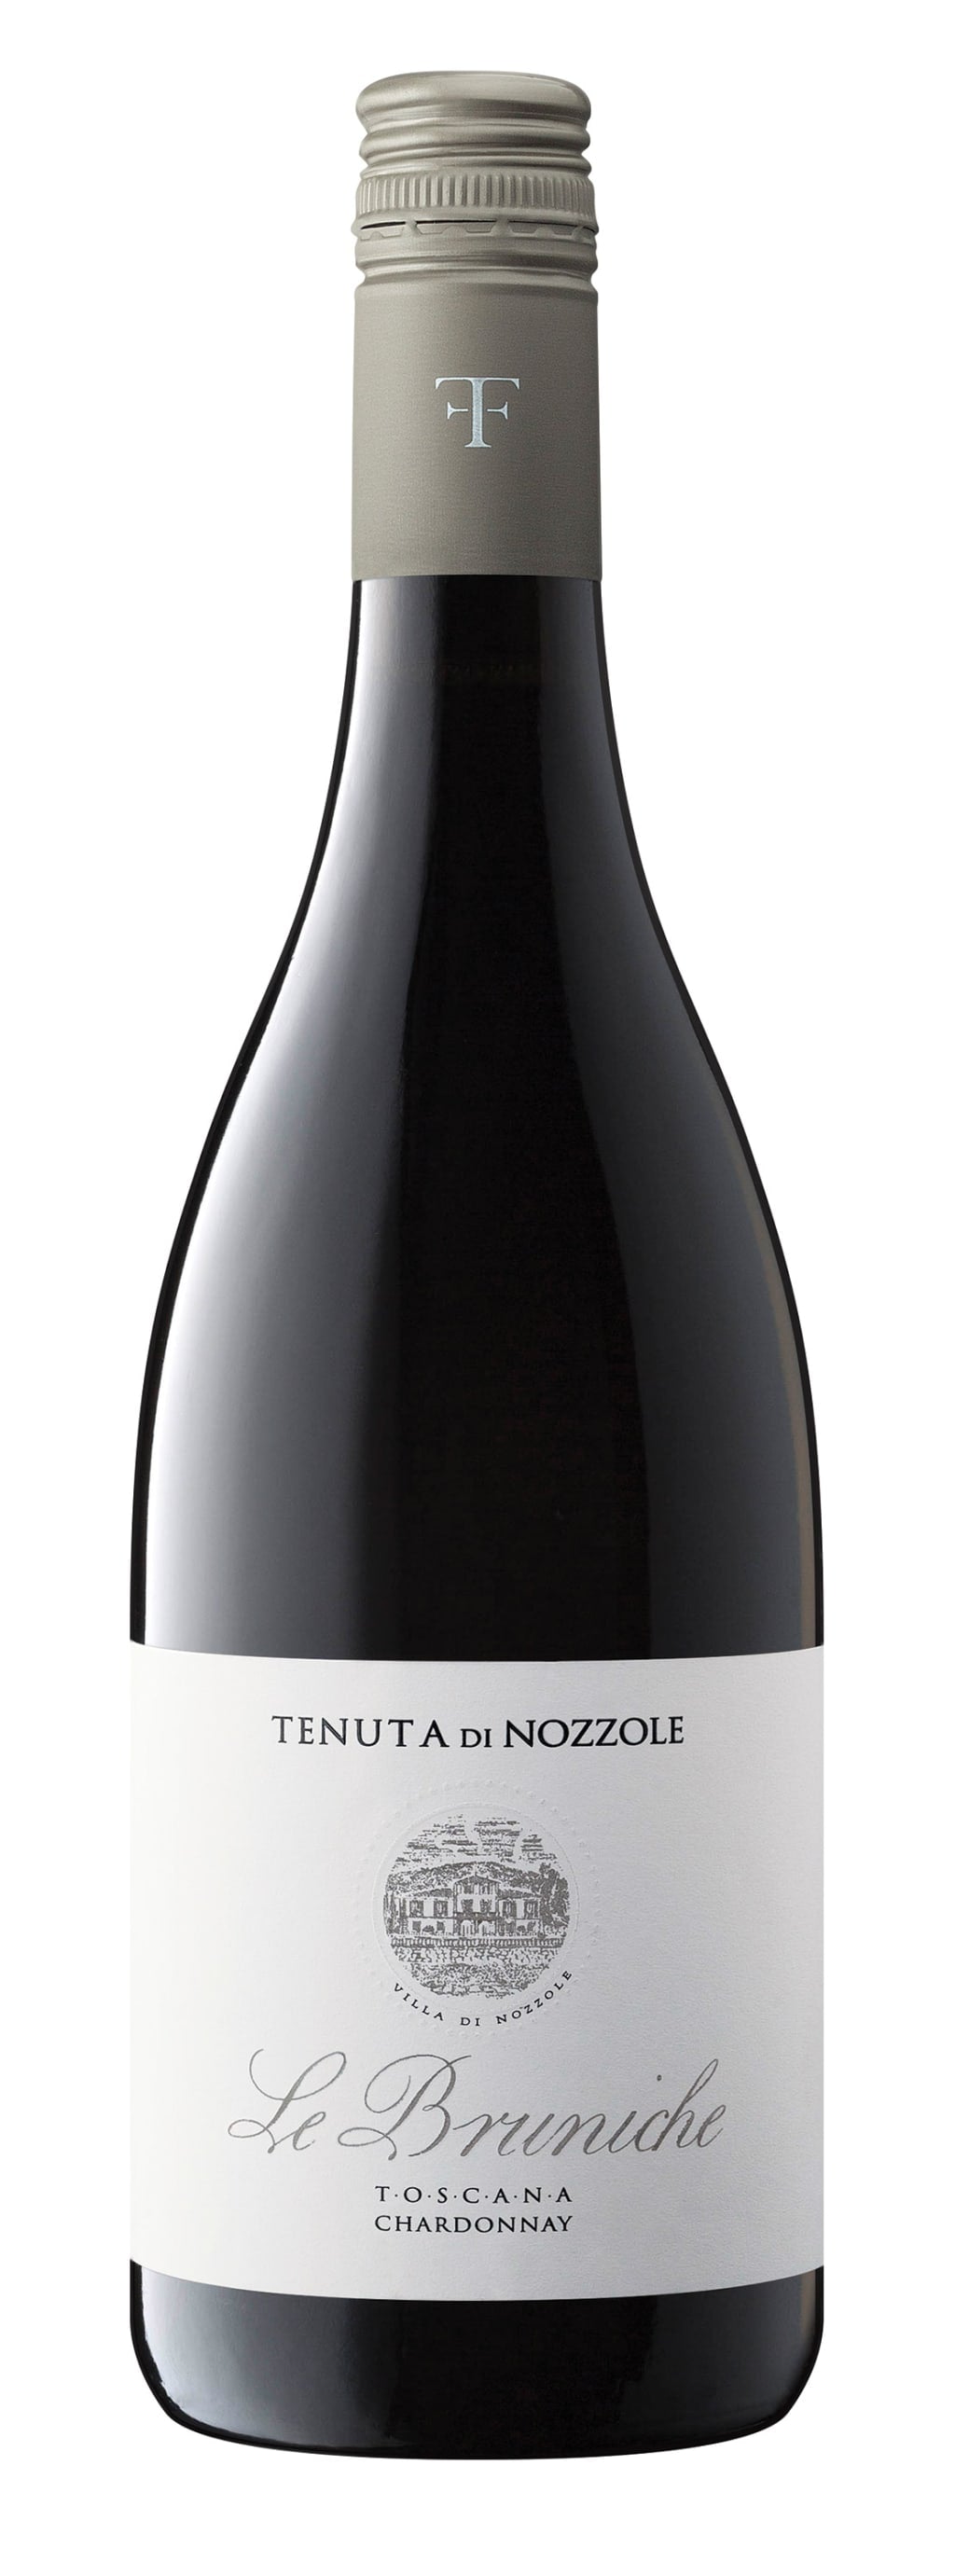 Tenuta di Nozzole Toscana Chardonnay le Bruniche 2019